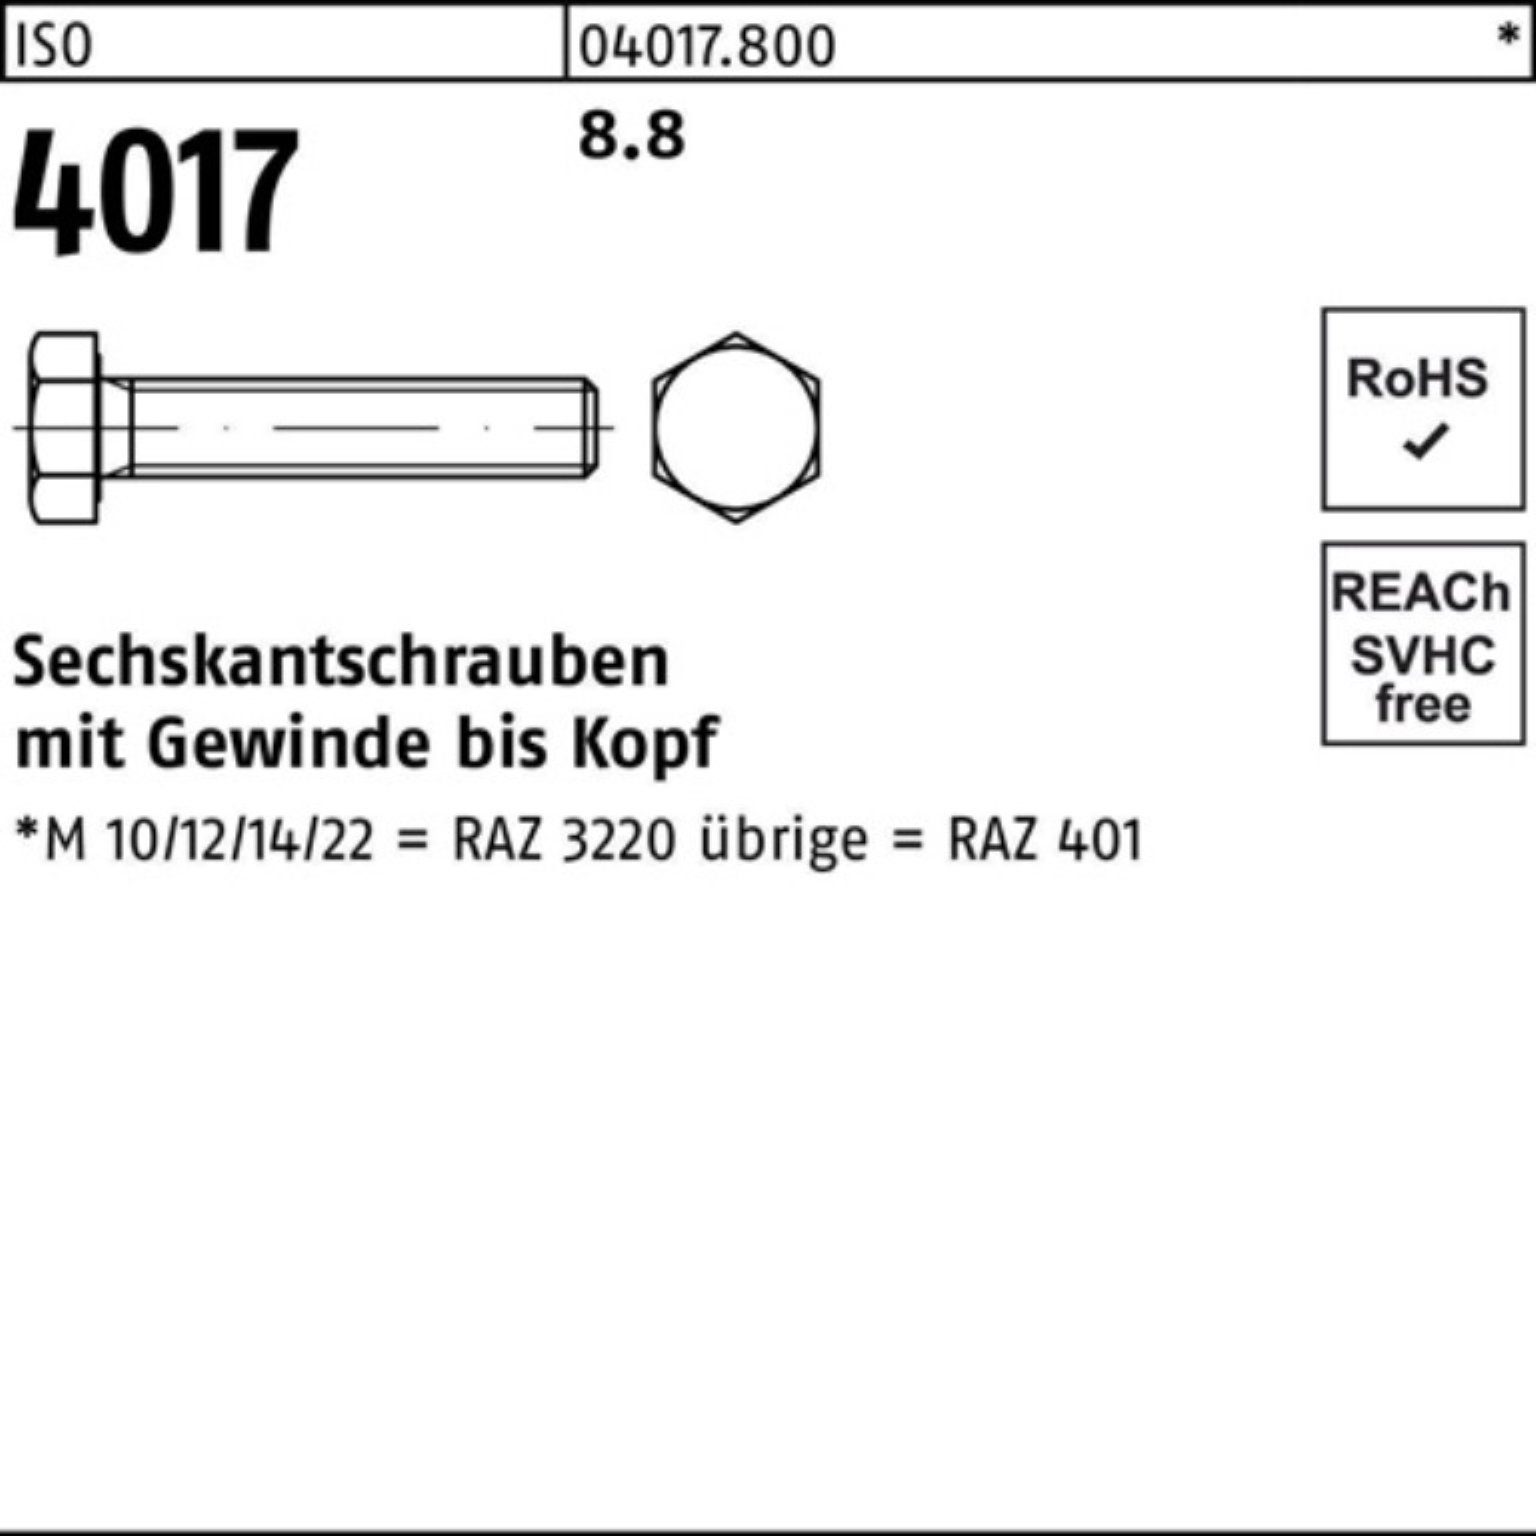 VG Stück 4017 Sechskantschraube M36x ISO 100er ISO 1 4017 70 Bufab Pack Sechskantschraube 8.8